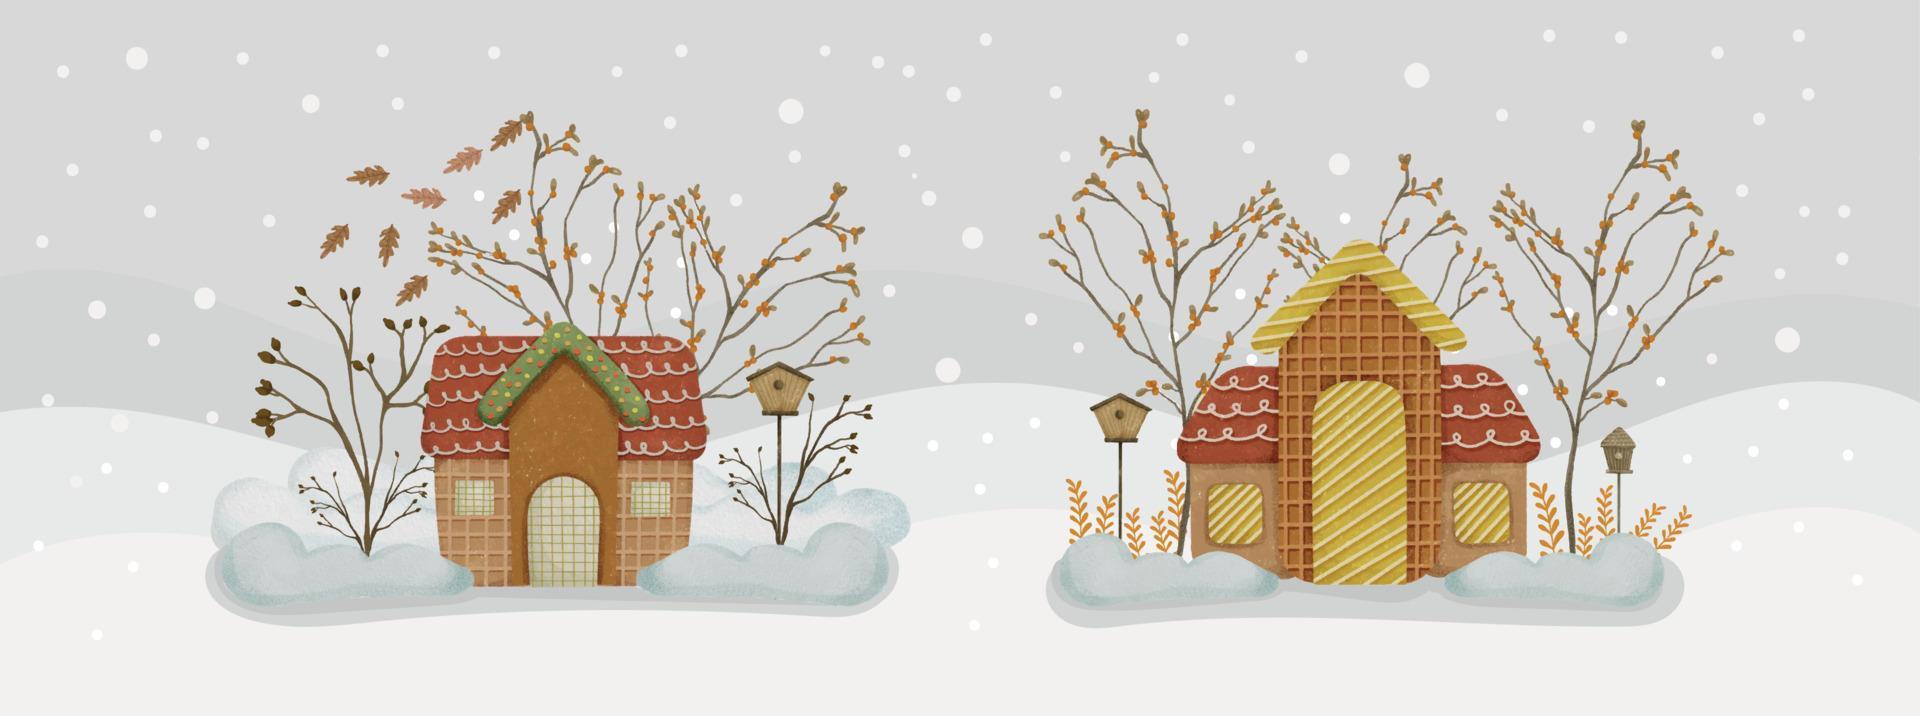 aquarell-lebkuchenhaus-komposition mit bergblick, während weihnachtsbanner-vorlage 01 schneit vektor